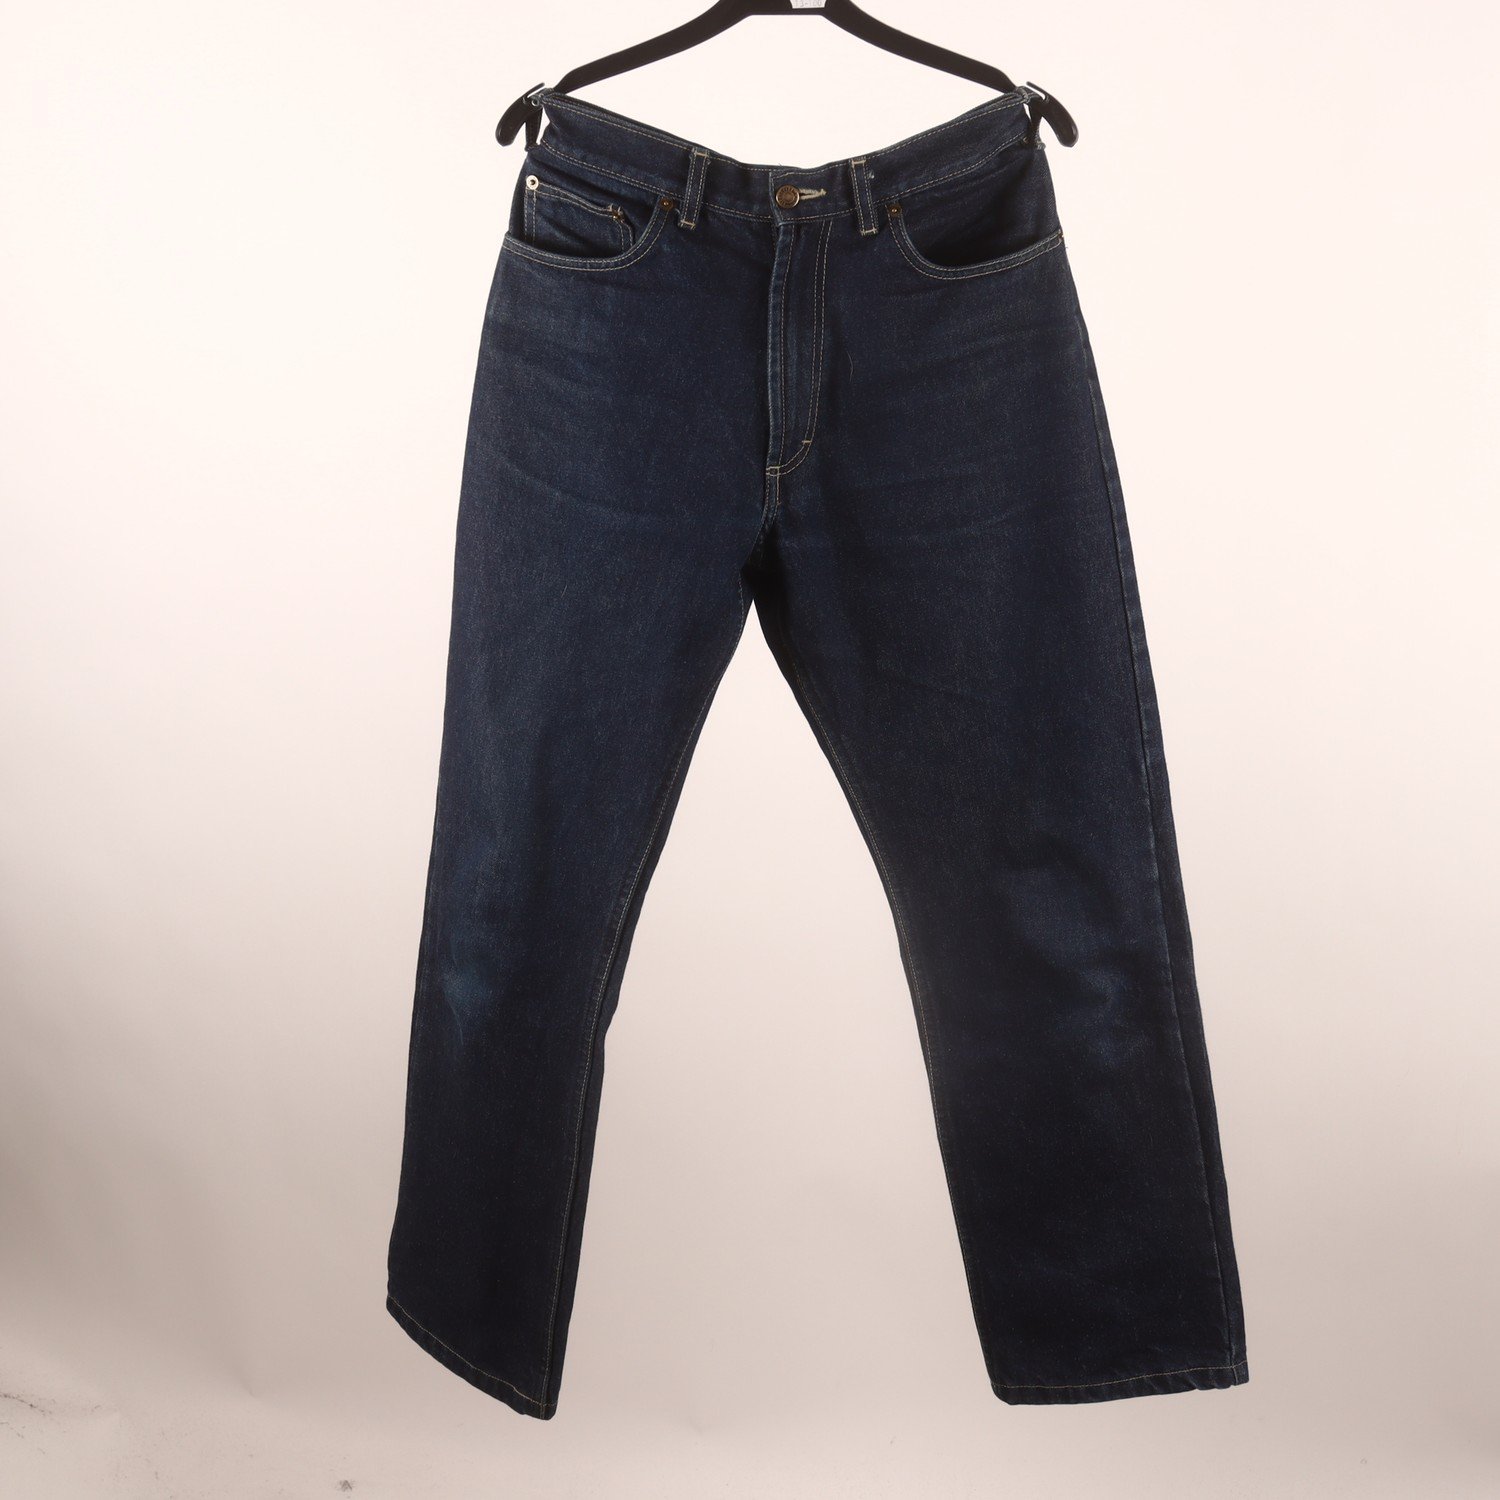 Jeans, Blåkläder, stl. 32/30